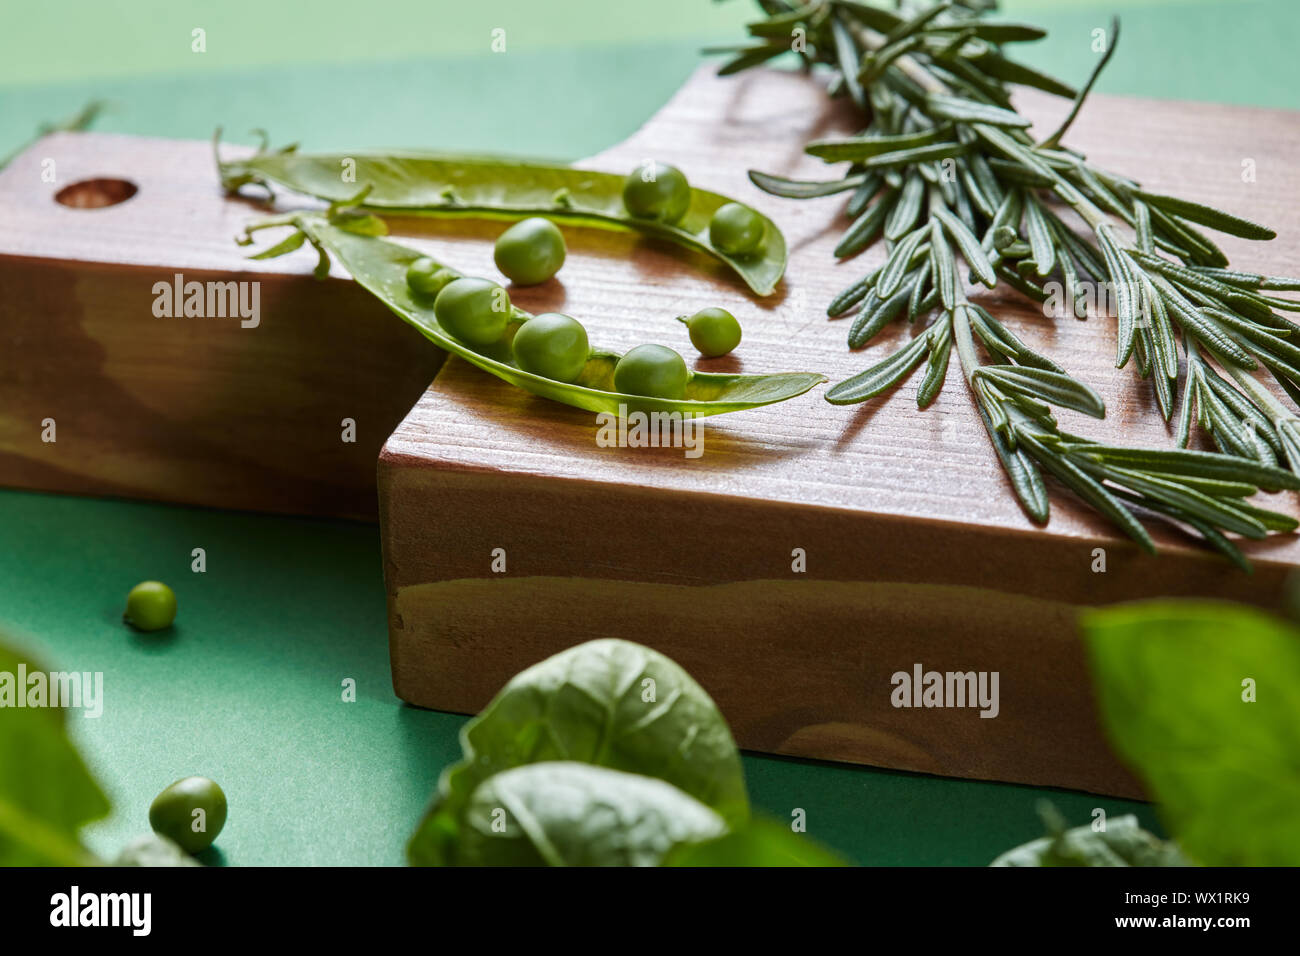 Grüne organische sauber Gemüse - Rosmarin, Hülsen, Erbsen, Bohnen, Spinat auf ein Holzbrett auf der Grünen. Stockfoto